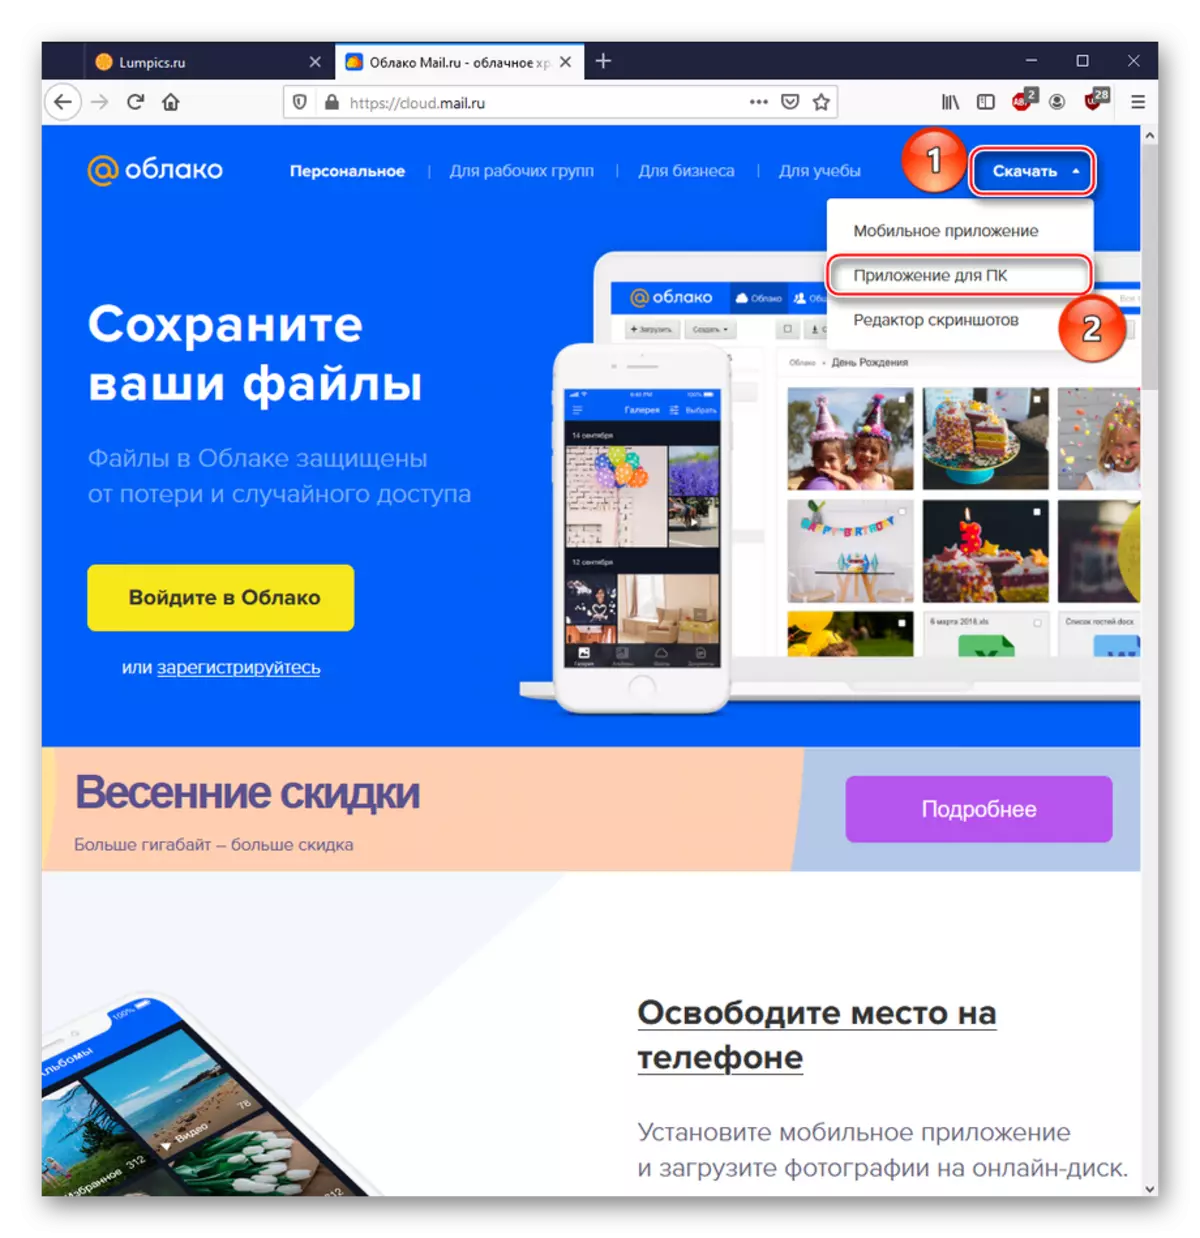 Tniżżil ta 'softwer speċjali biex jaħdem mas-servizz cloud@mail.ru